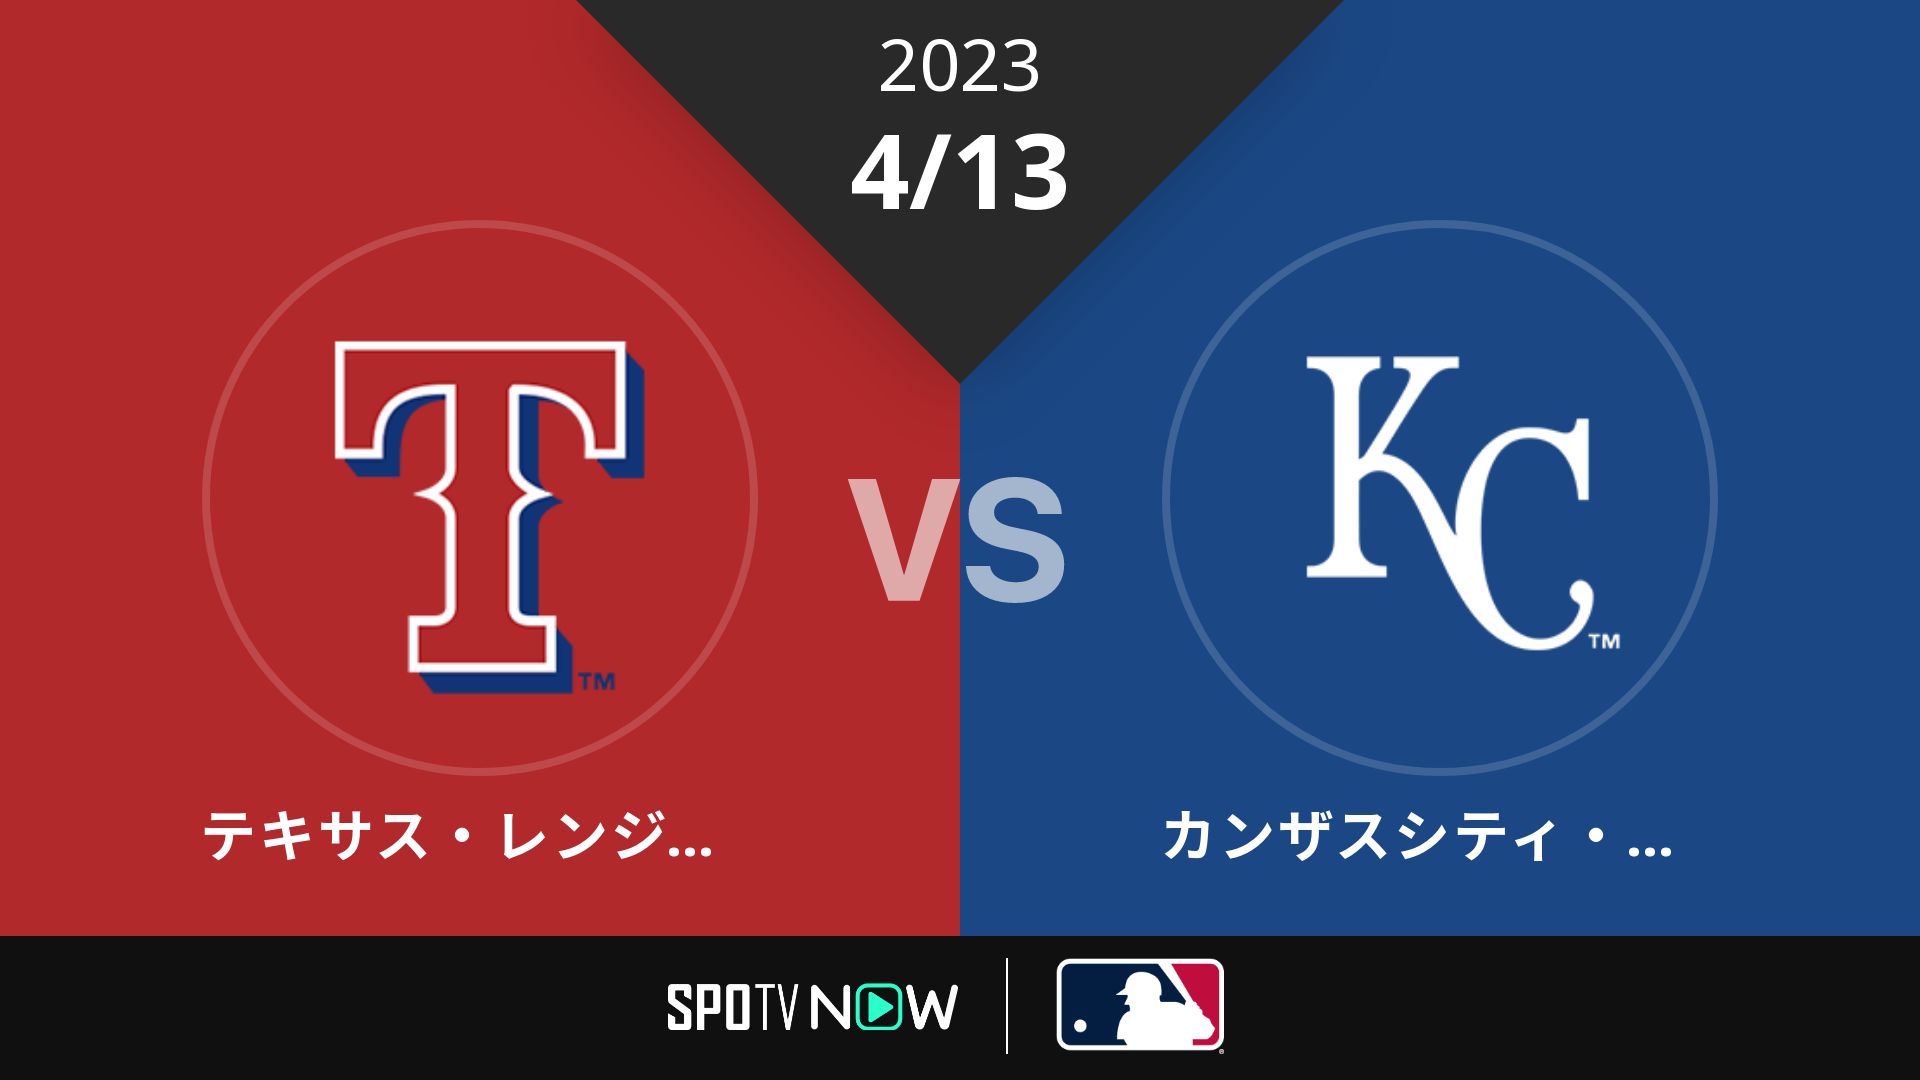 2023/4/13 レンジャーズ vs ロイヤルズ [MLB]